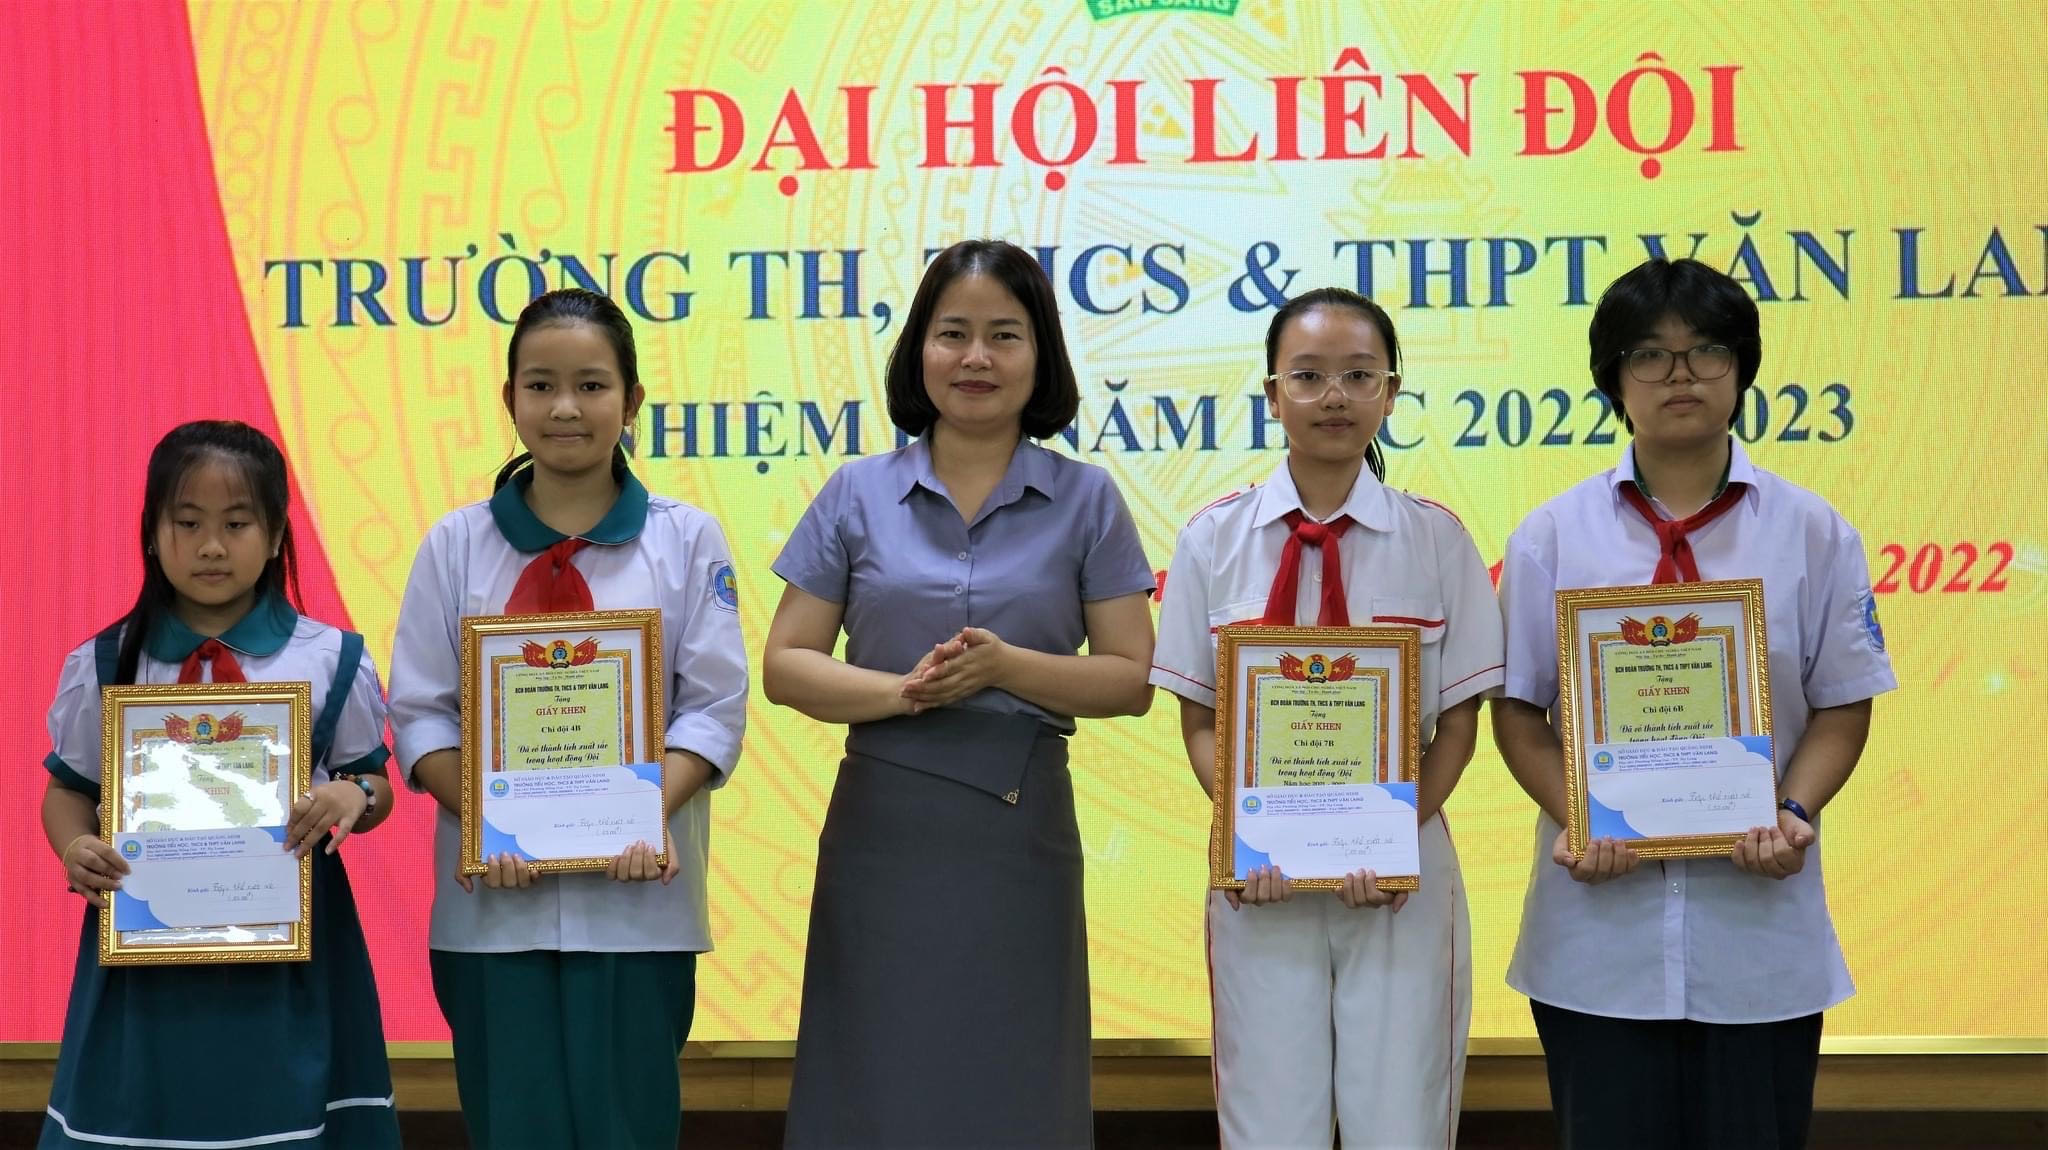 Trường TH, THCS & THPT Văn Lang tổ chức Đại hội Liên đội năm học 2022 - 2023